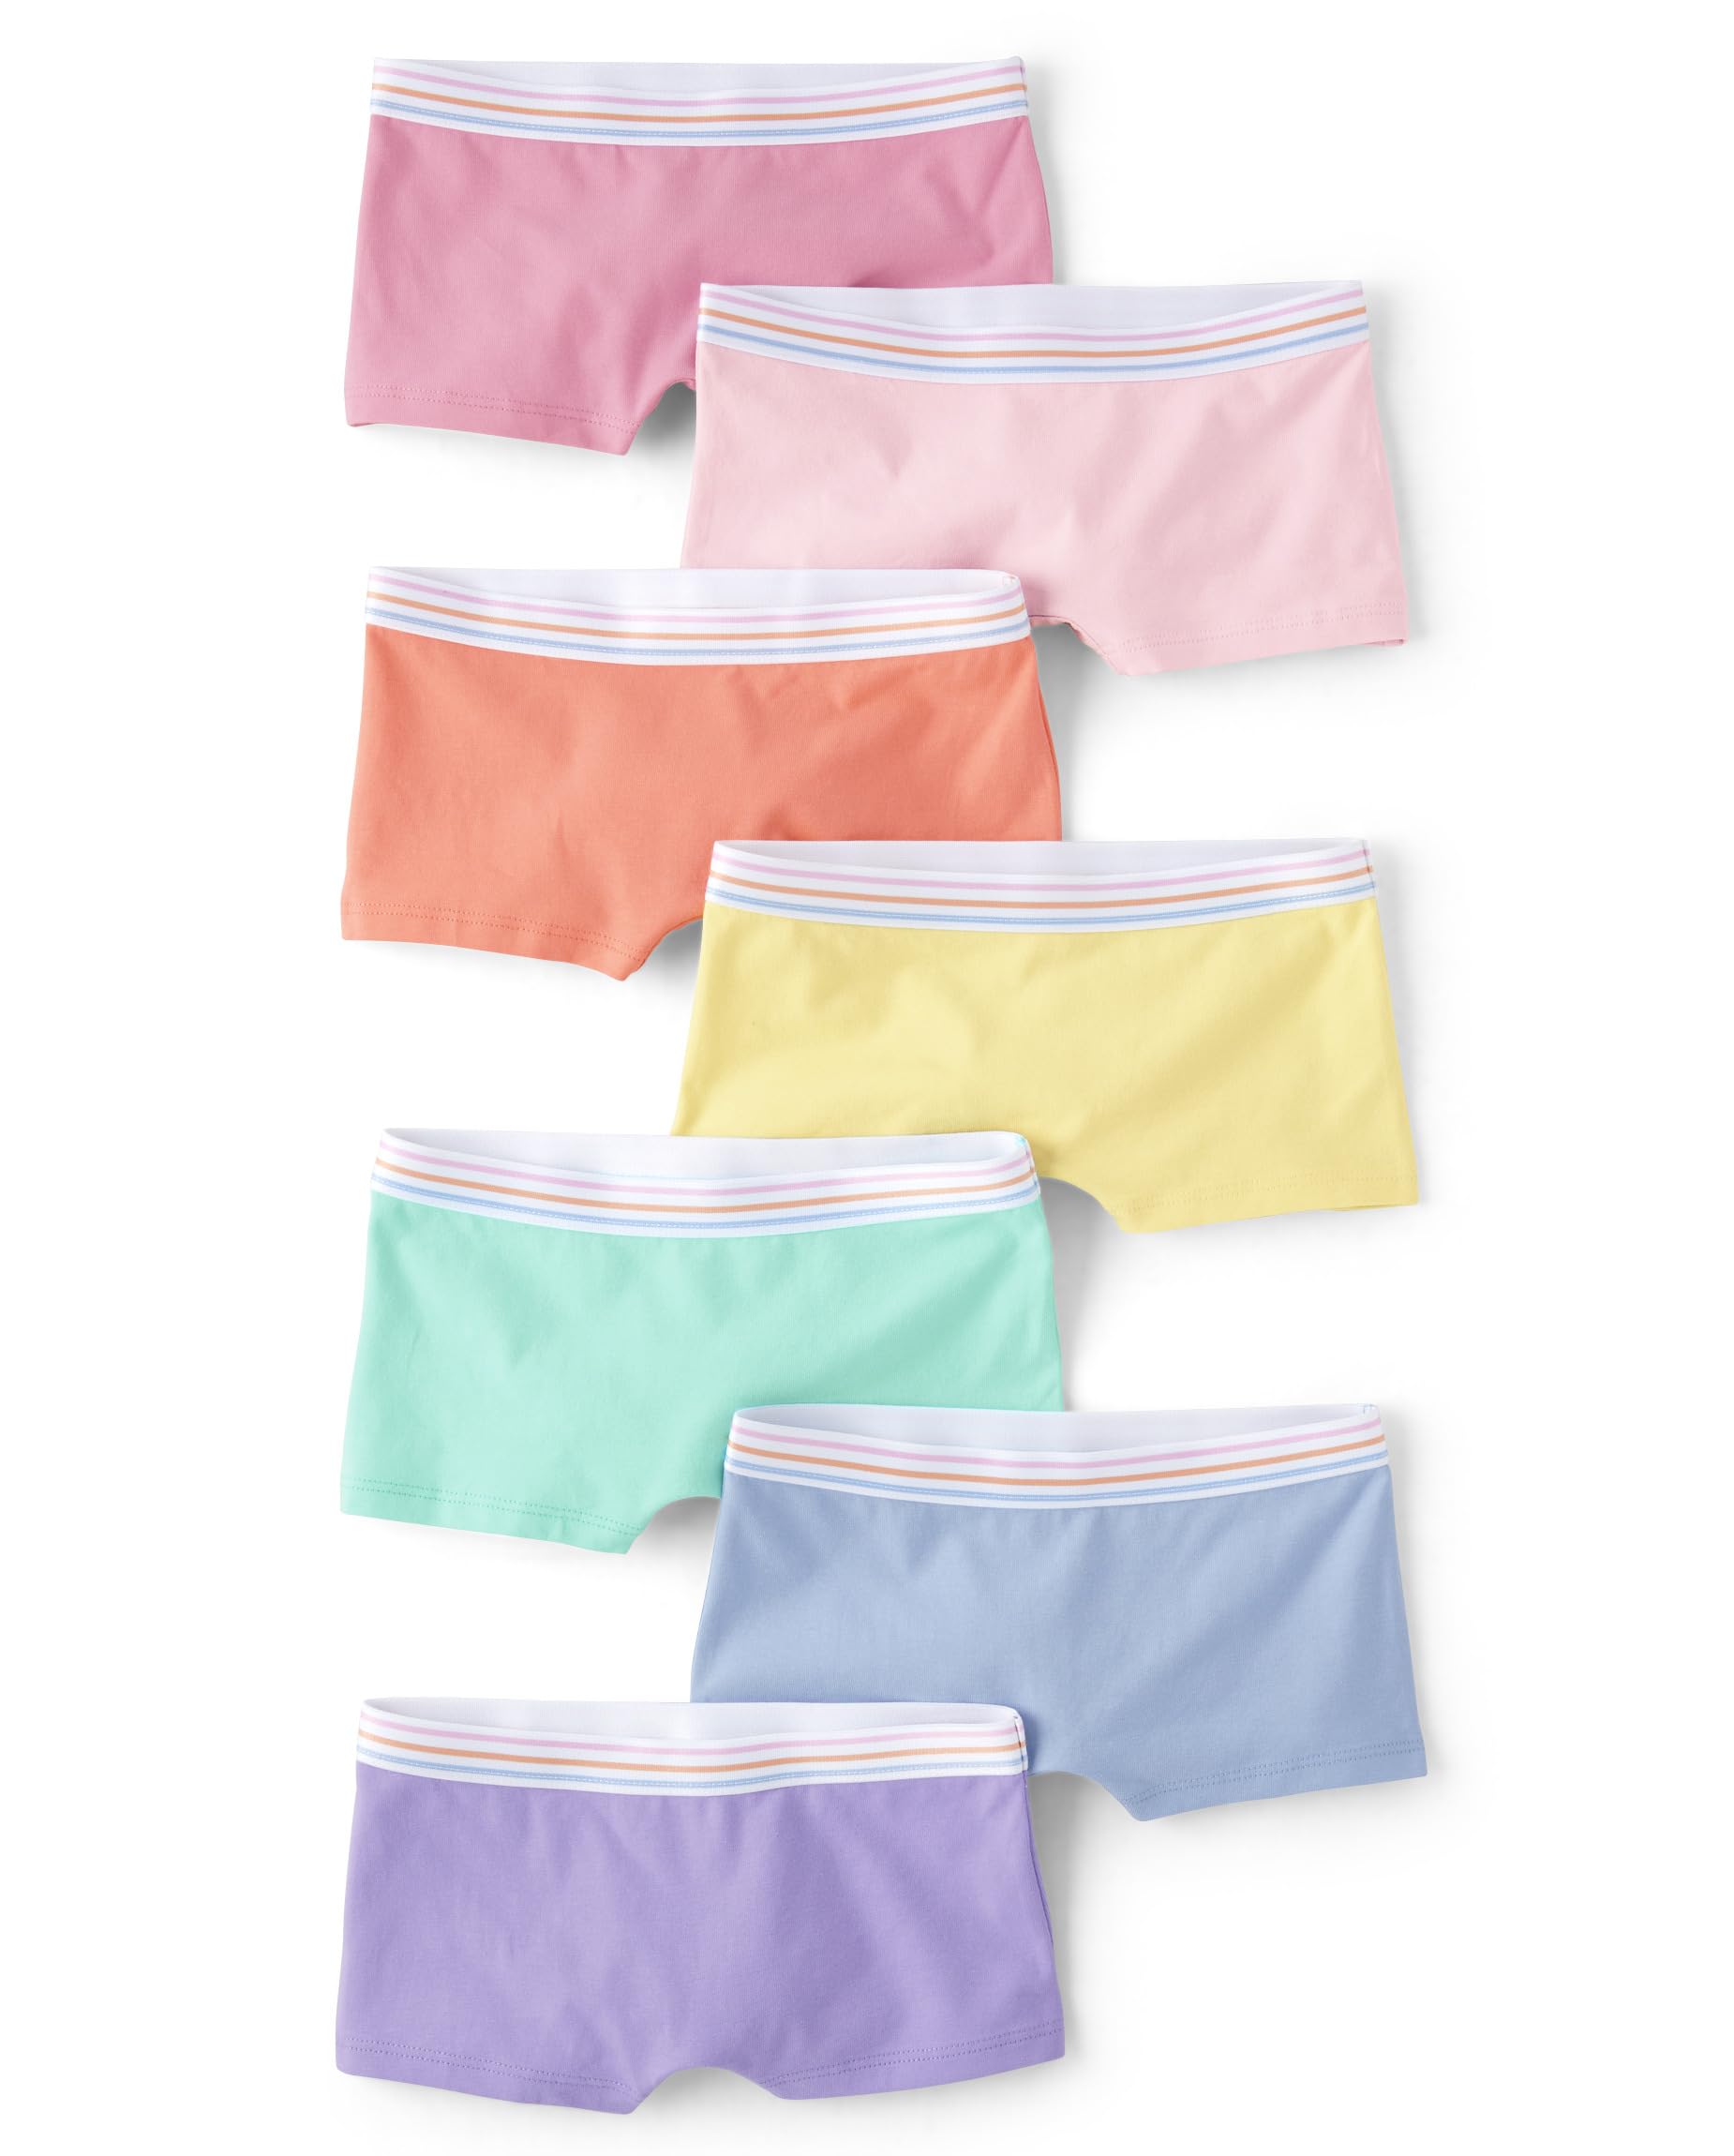 The Children's Place Girls' Cotton Boyshort Underwear Variety Pack